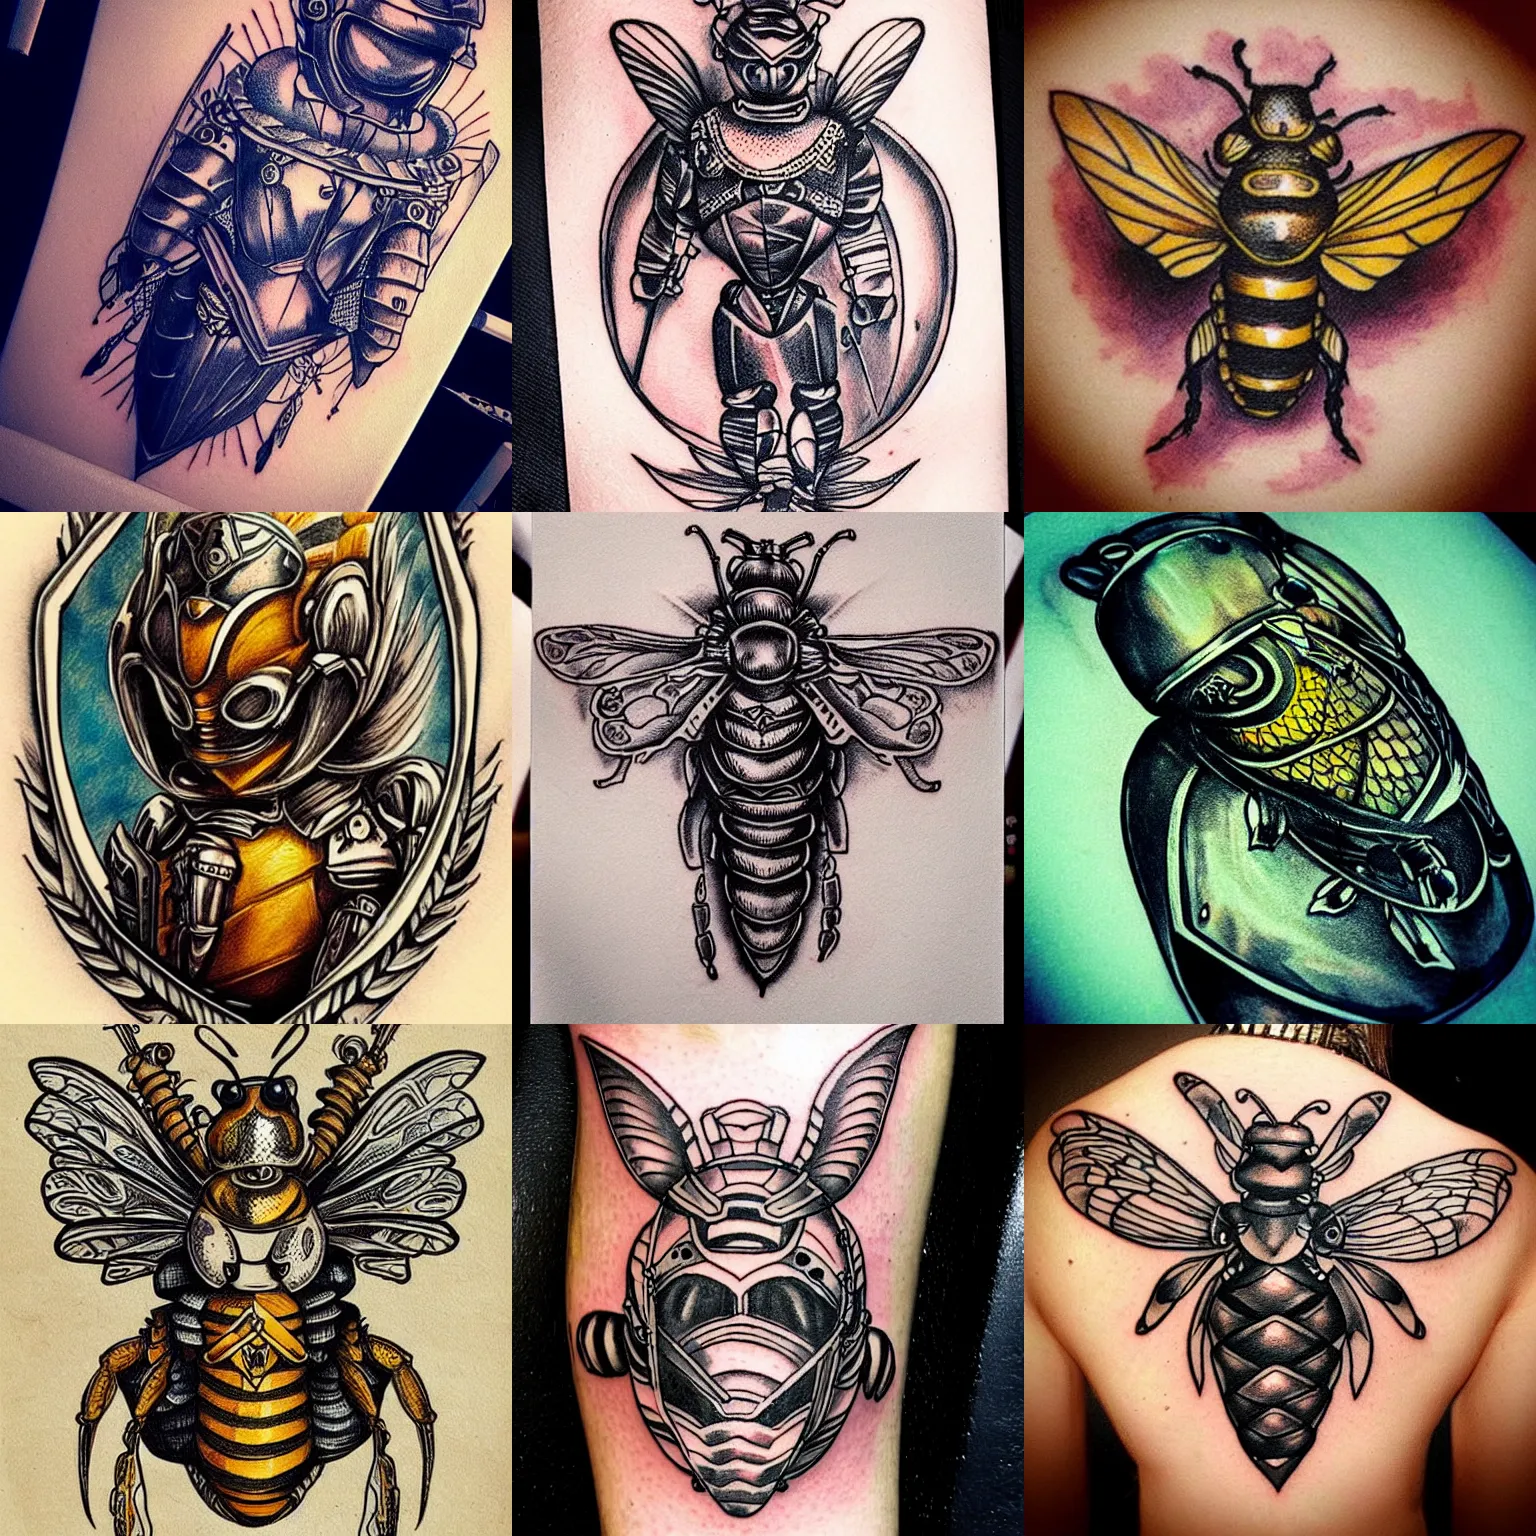 Little bee tattoo - #tattooart #bees #fypシ #tattooideas | TikTok